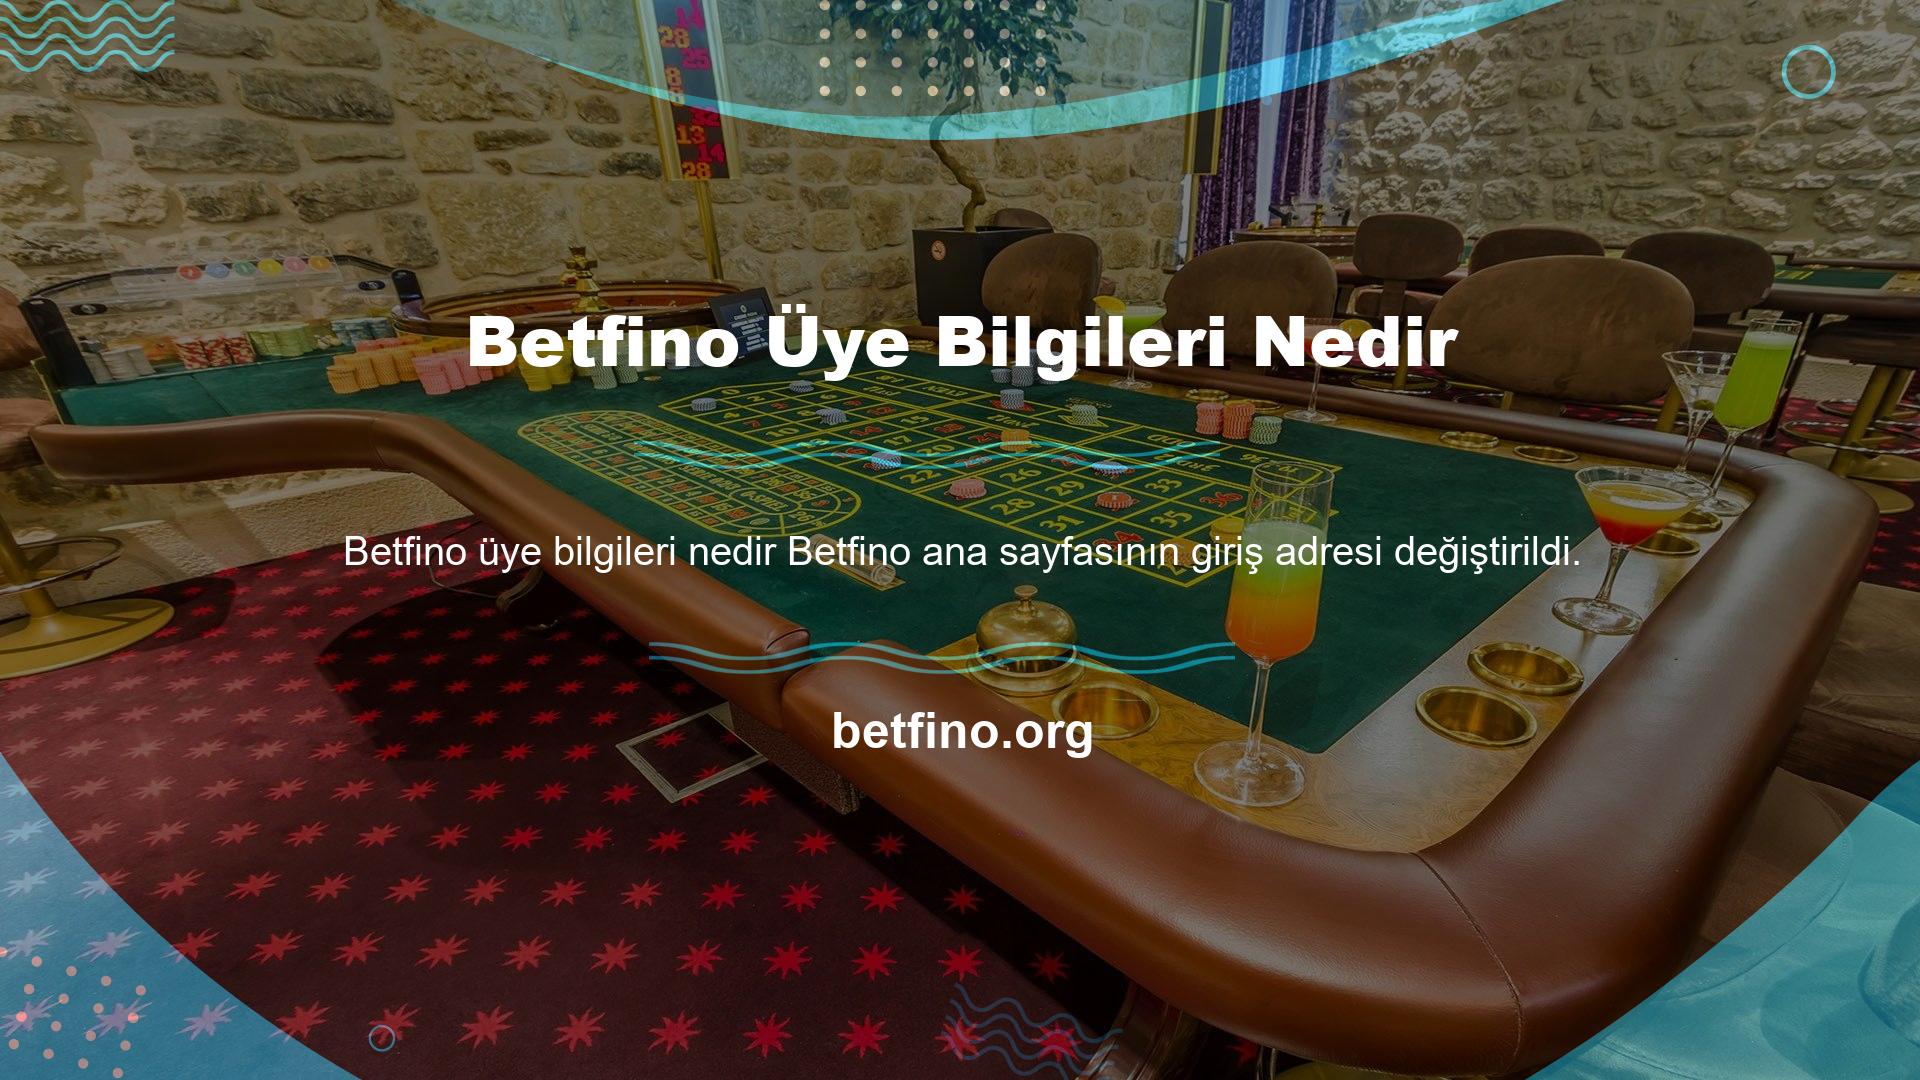 Sayfa URL'miz, web sitesi tarafından sağlanan Betfino